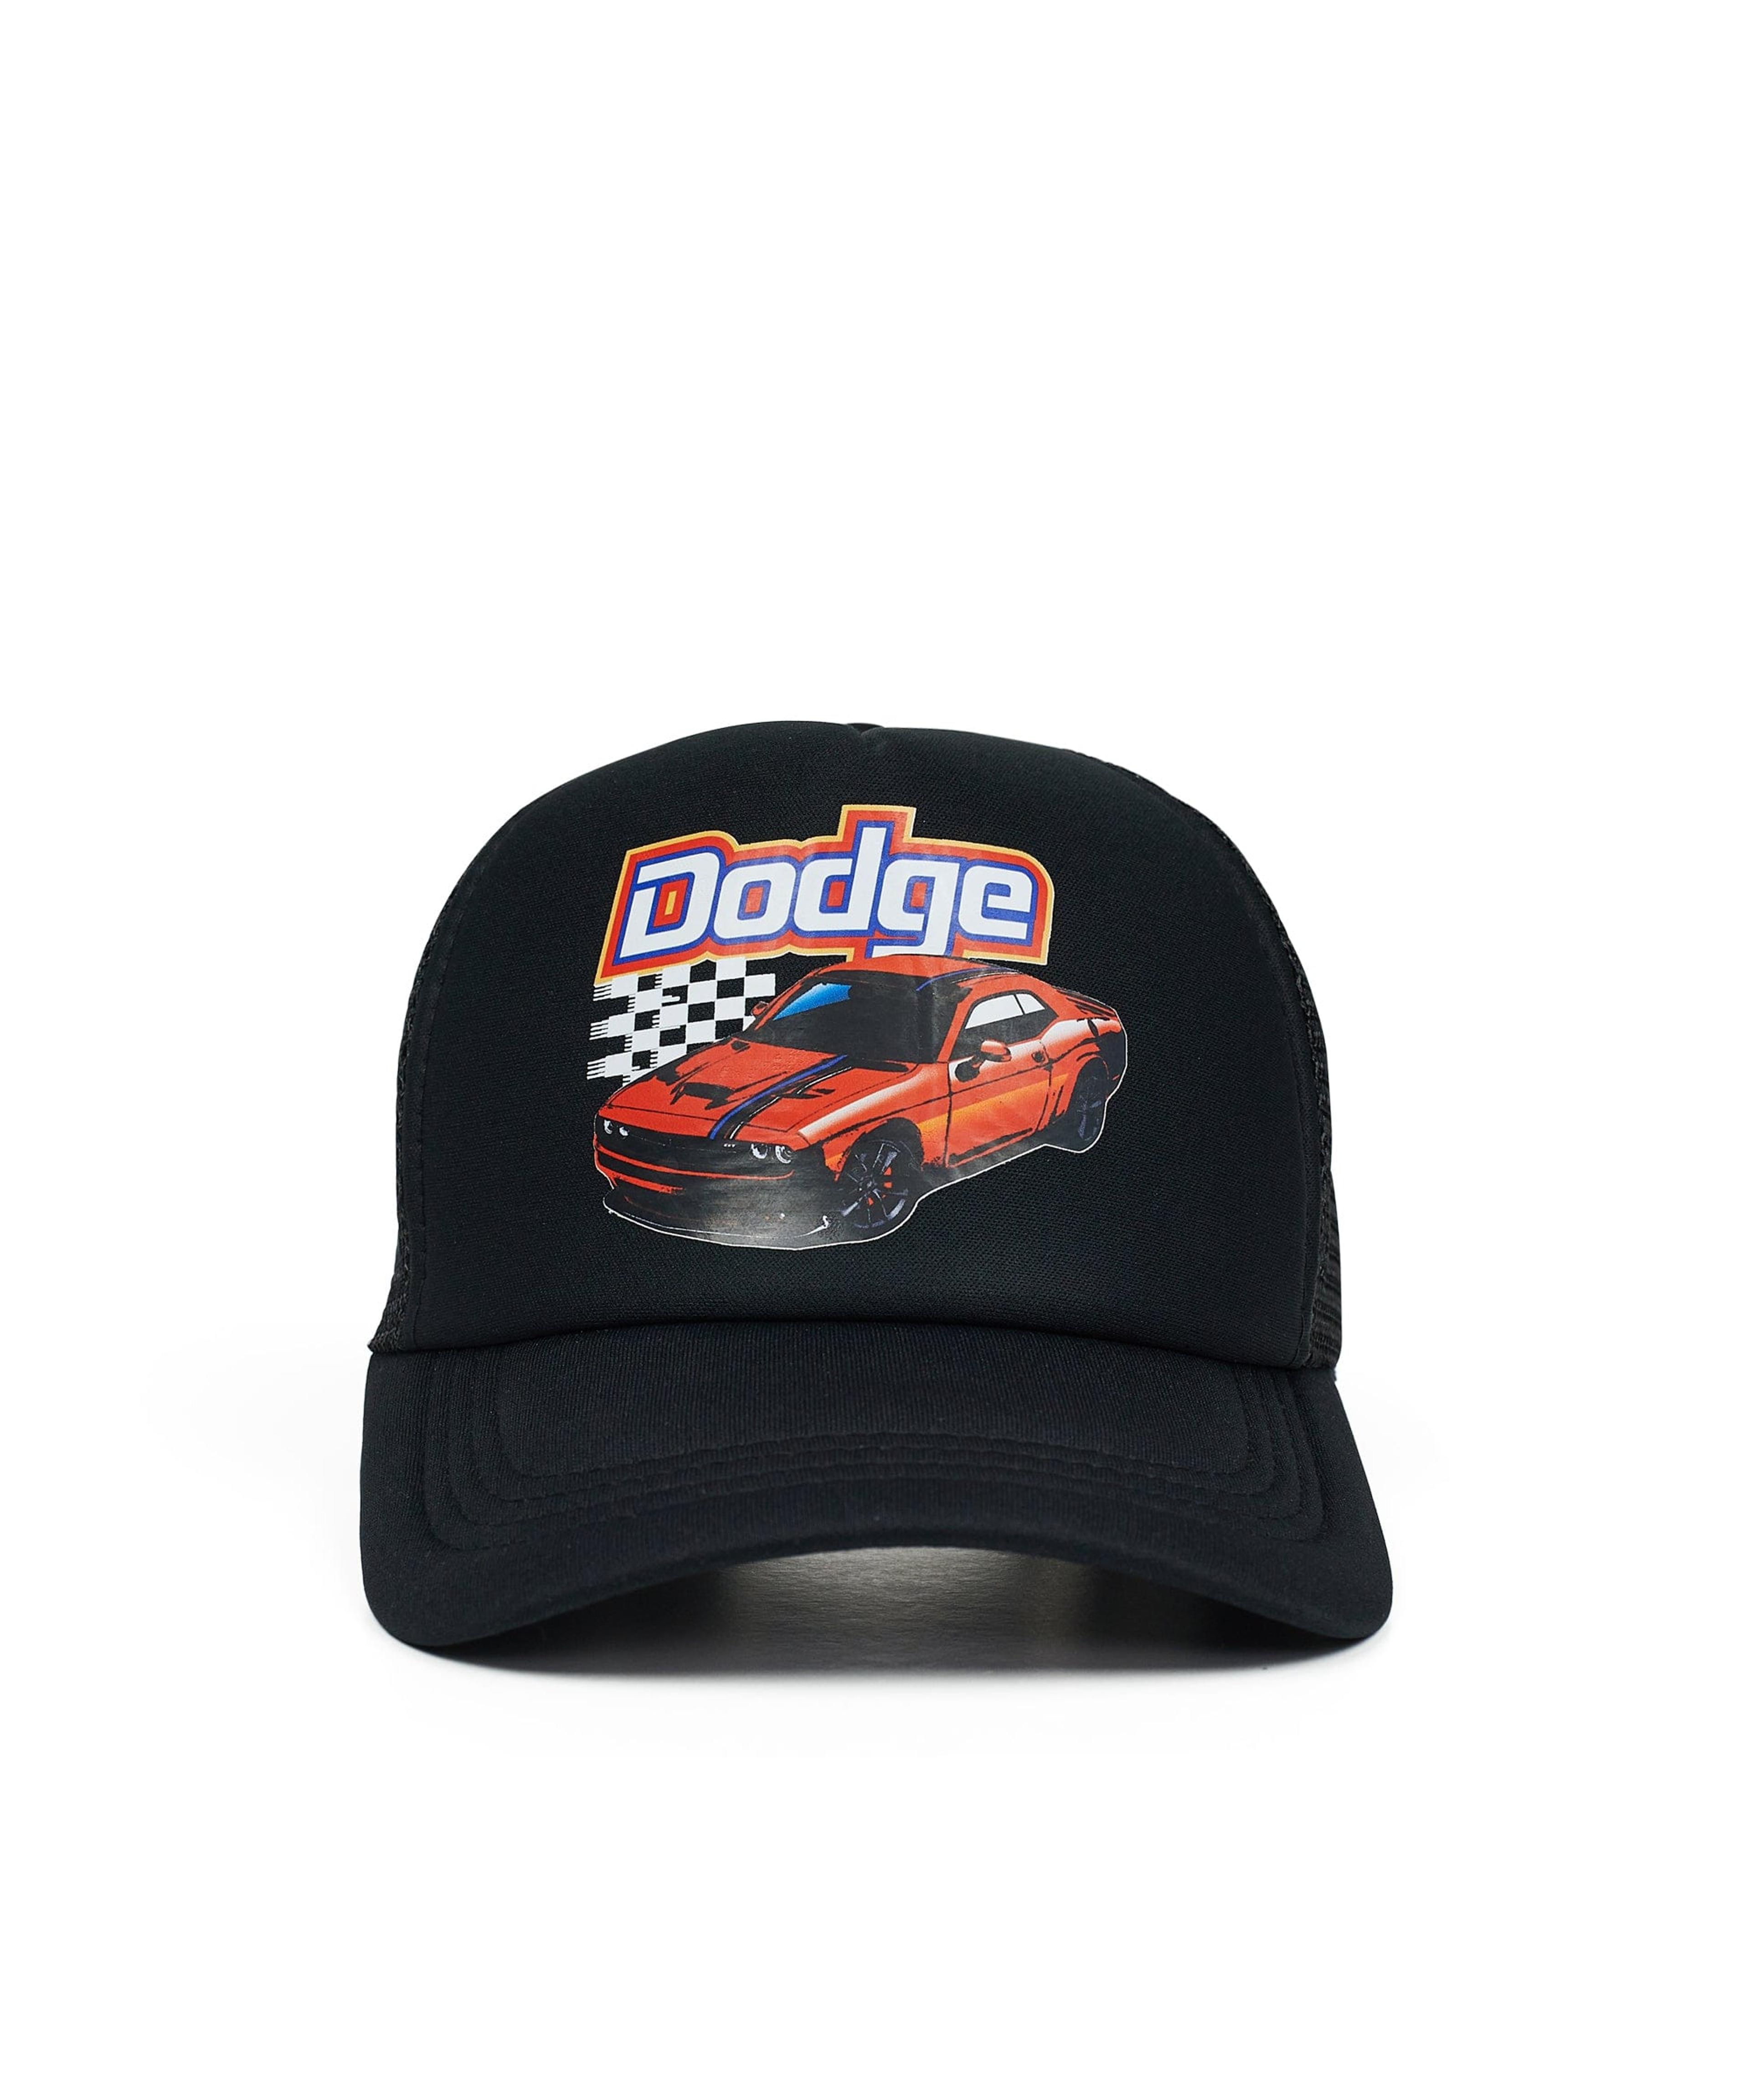 Dodge Racing Trucker Hat